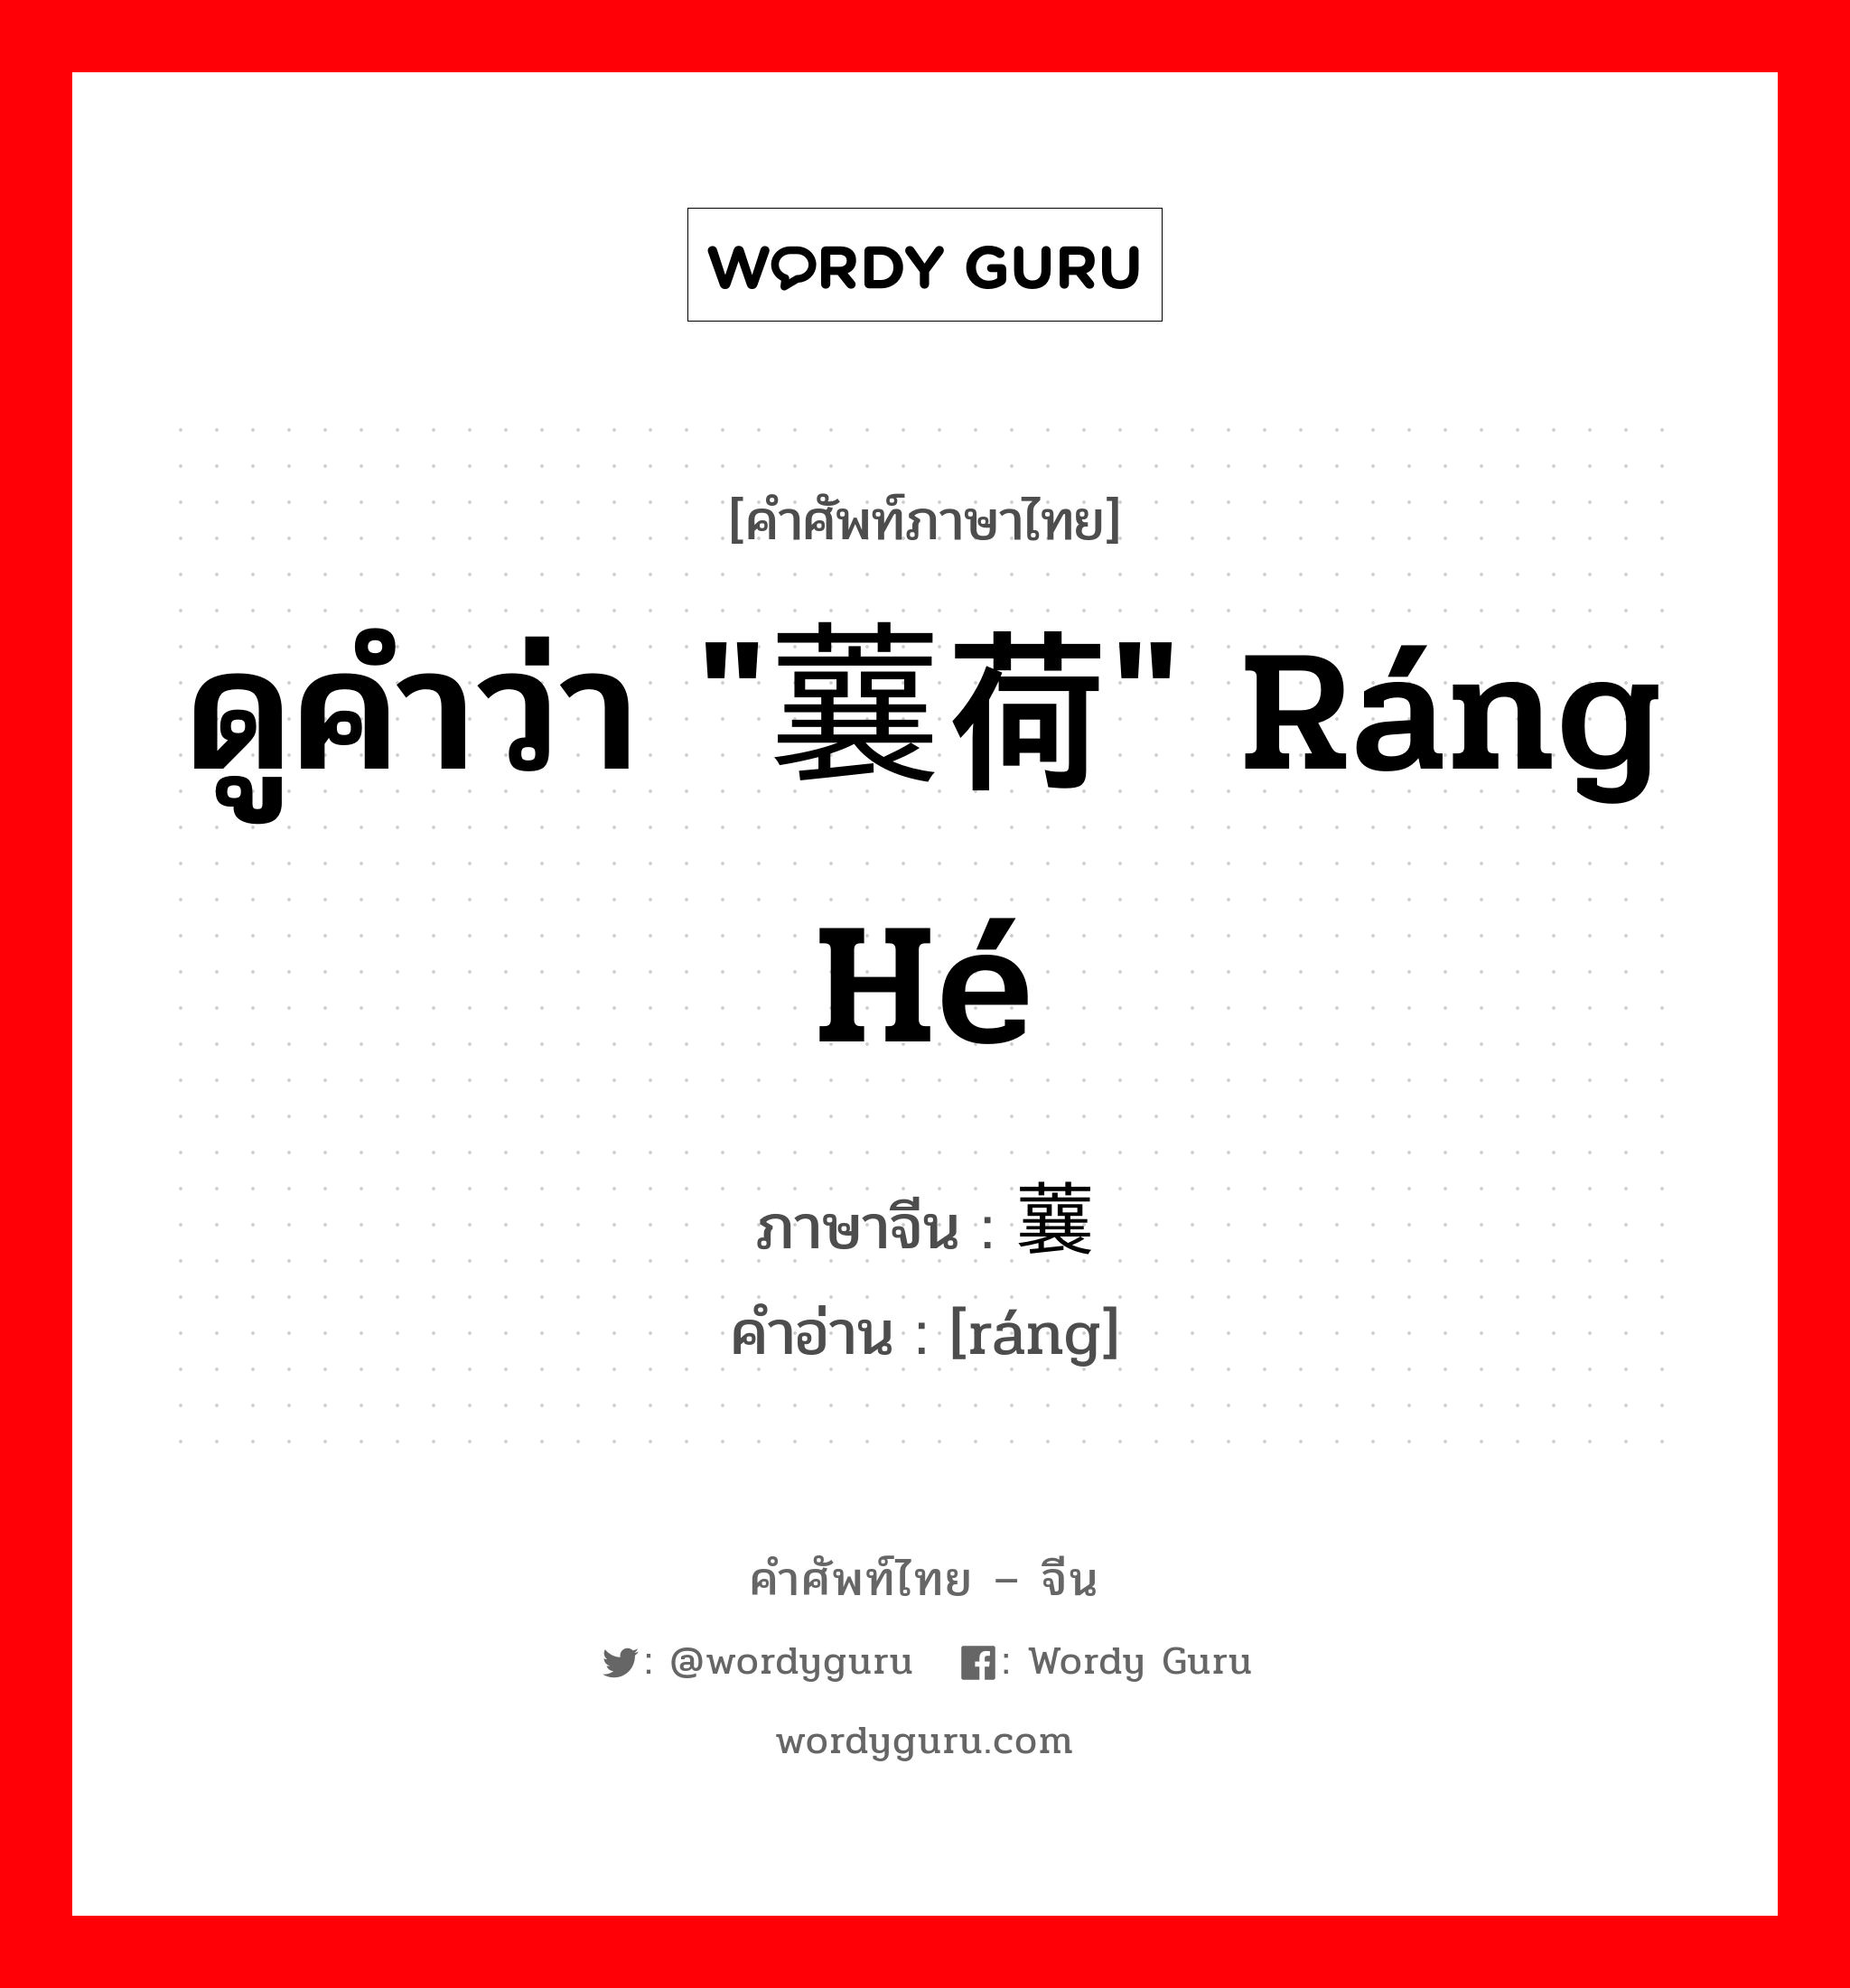 ดูคำว่า "蘘荷" ráng hé ภาษาจีนคืออะไร, คำศัพท์ภาษาไทย - จีน ดูคำว่า "蘘荷" ráng hé ภาษาจีน 蘘 คำอ่าน [ráng]